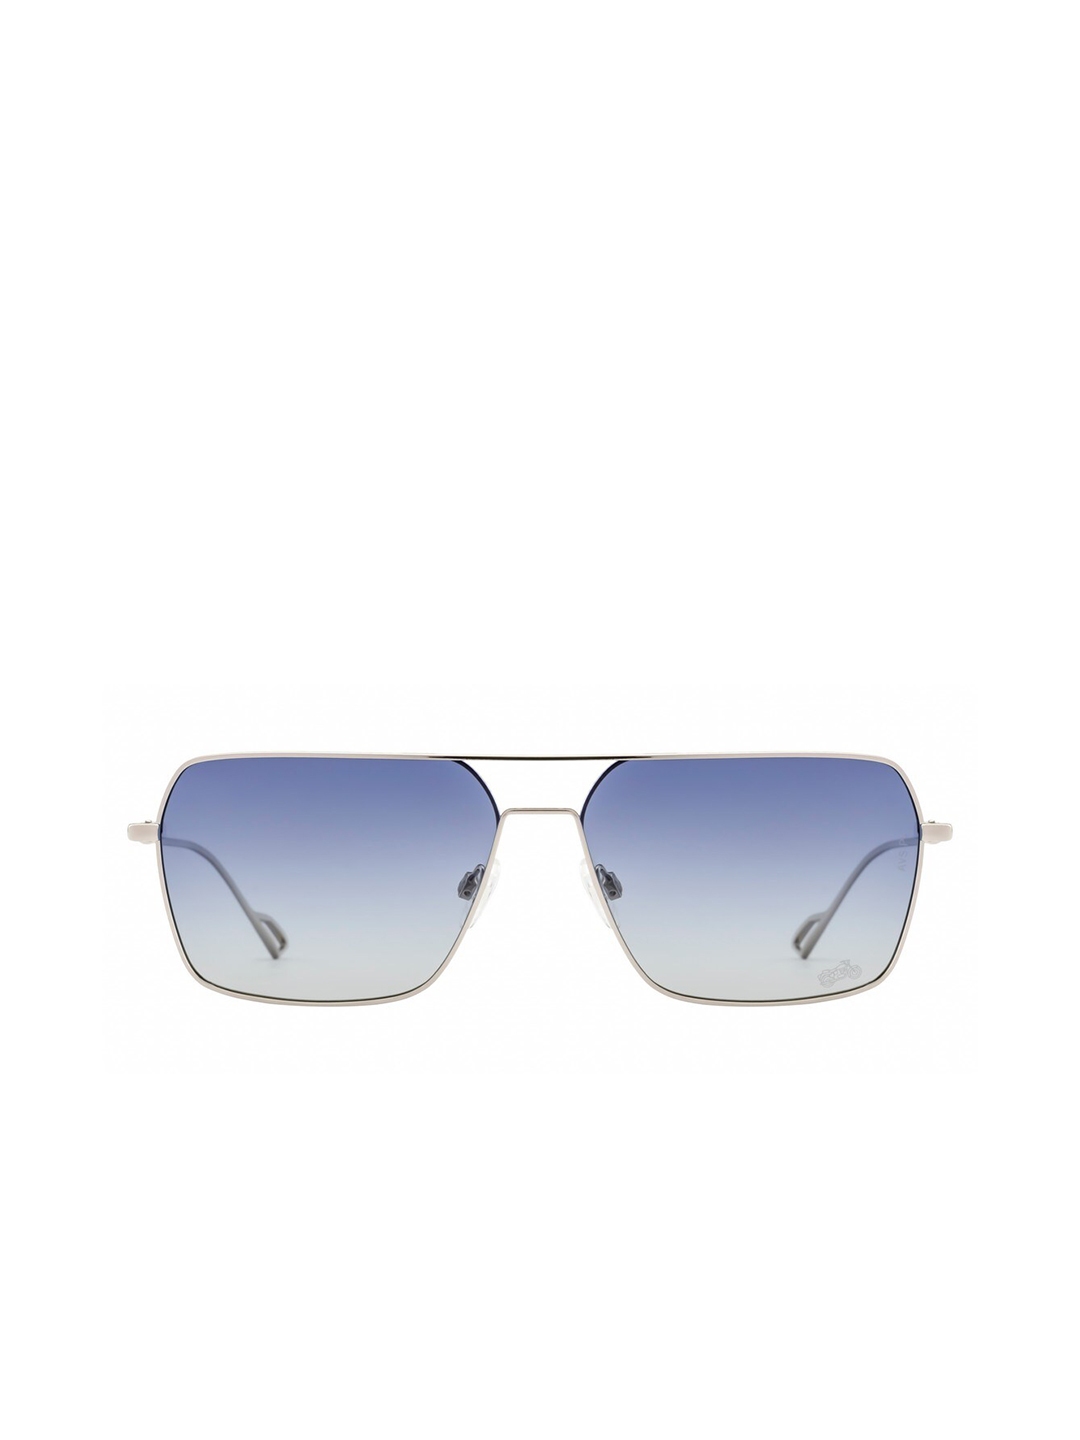 Police SPLL07K59579BSG Blue UV Protection Pilot Sunglasses for Men